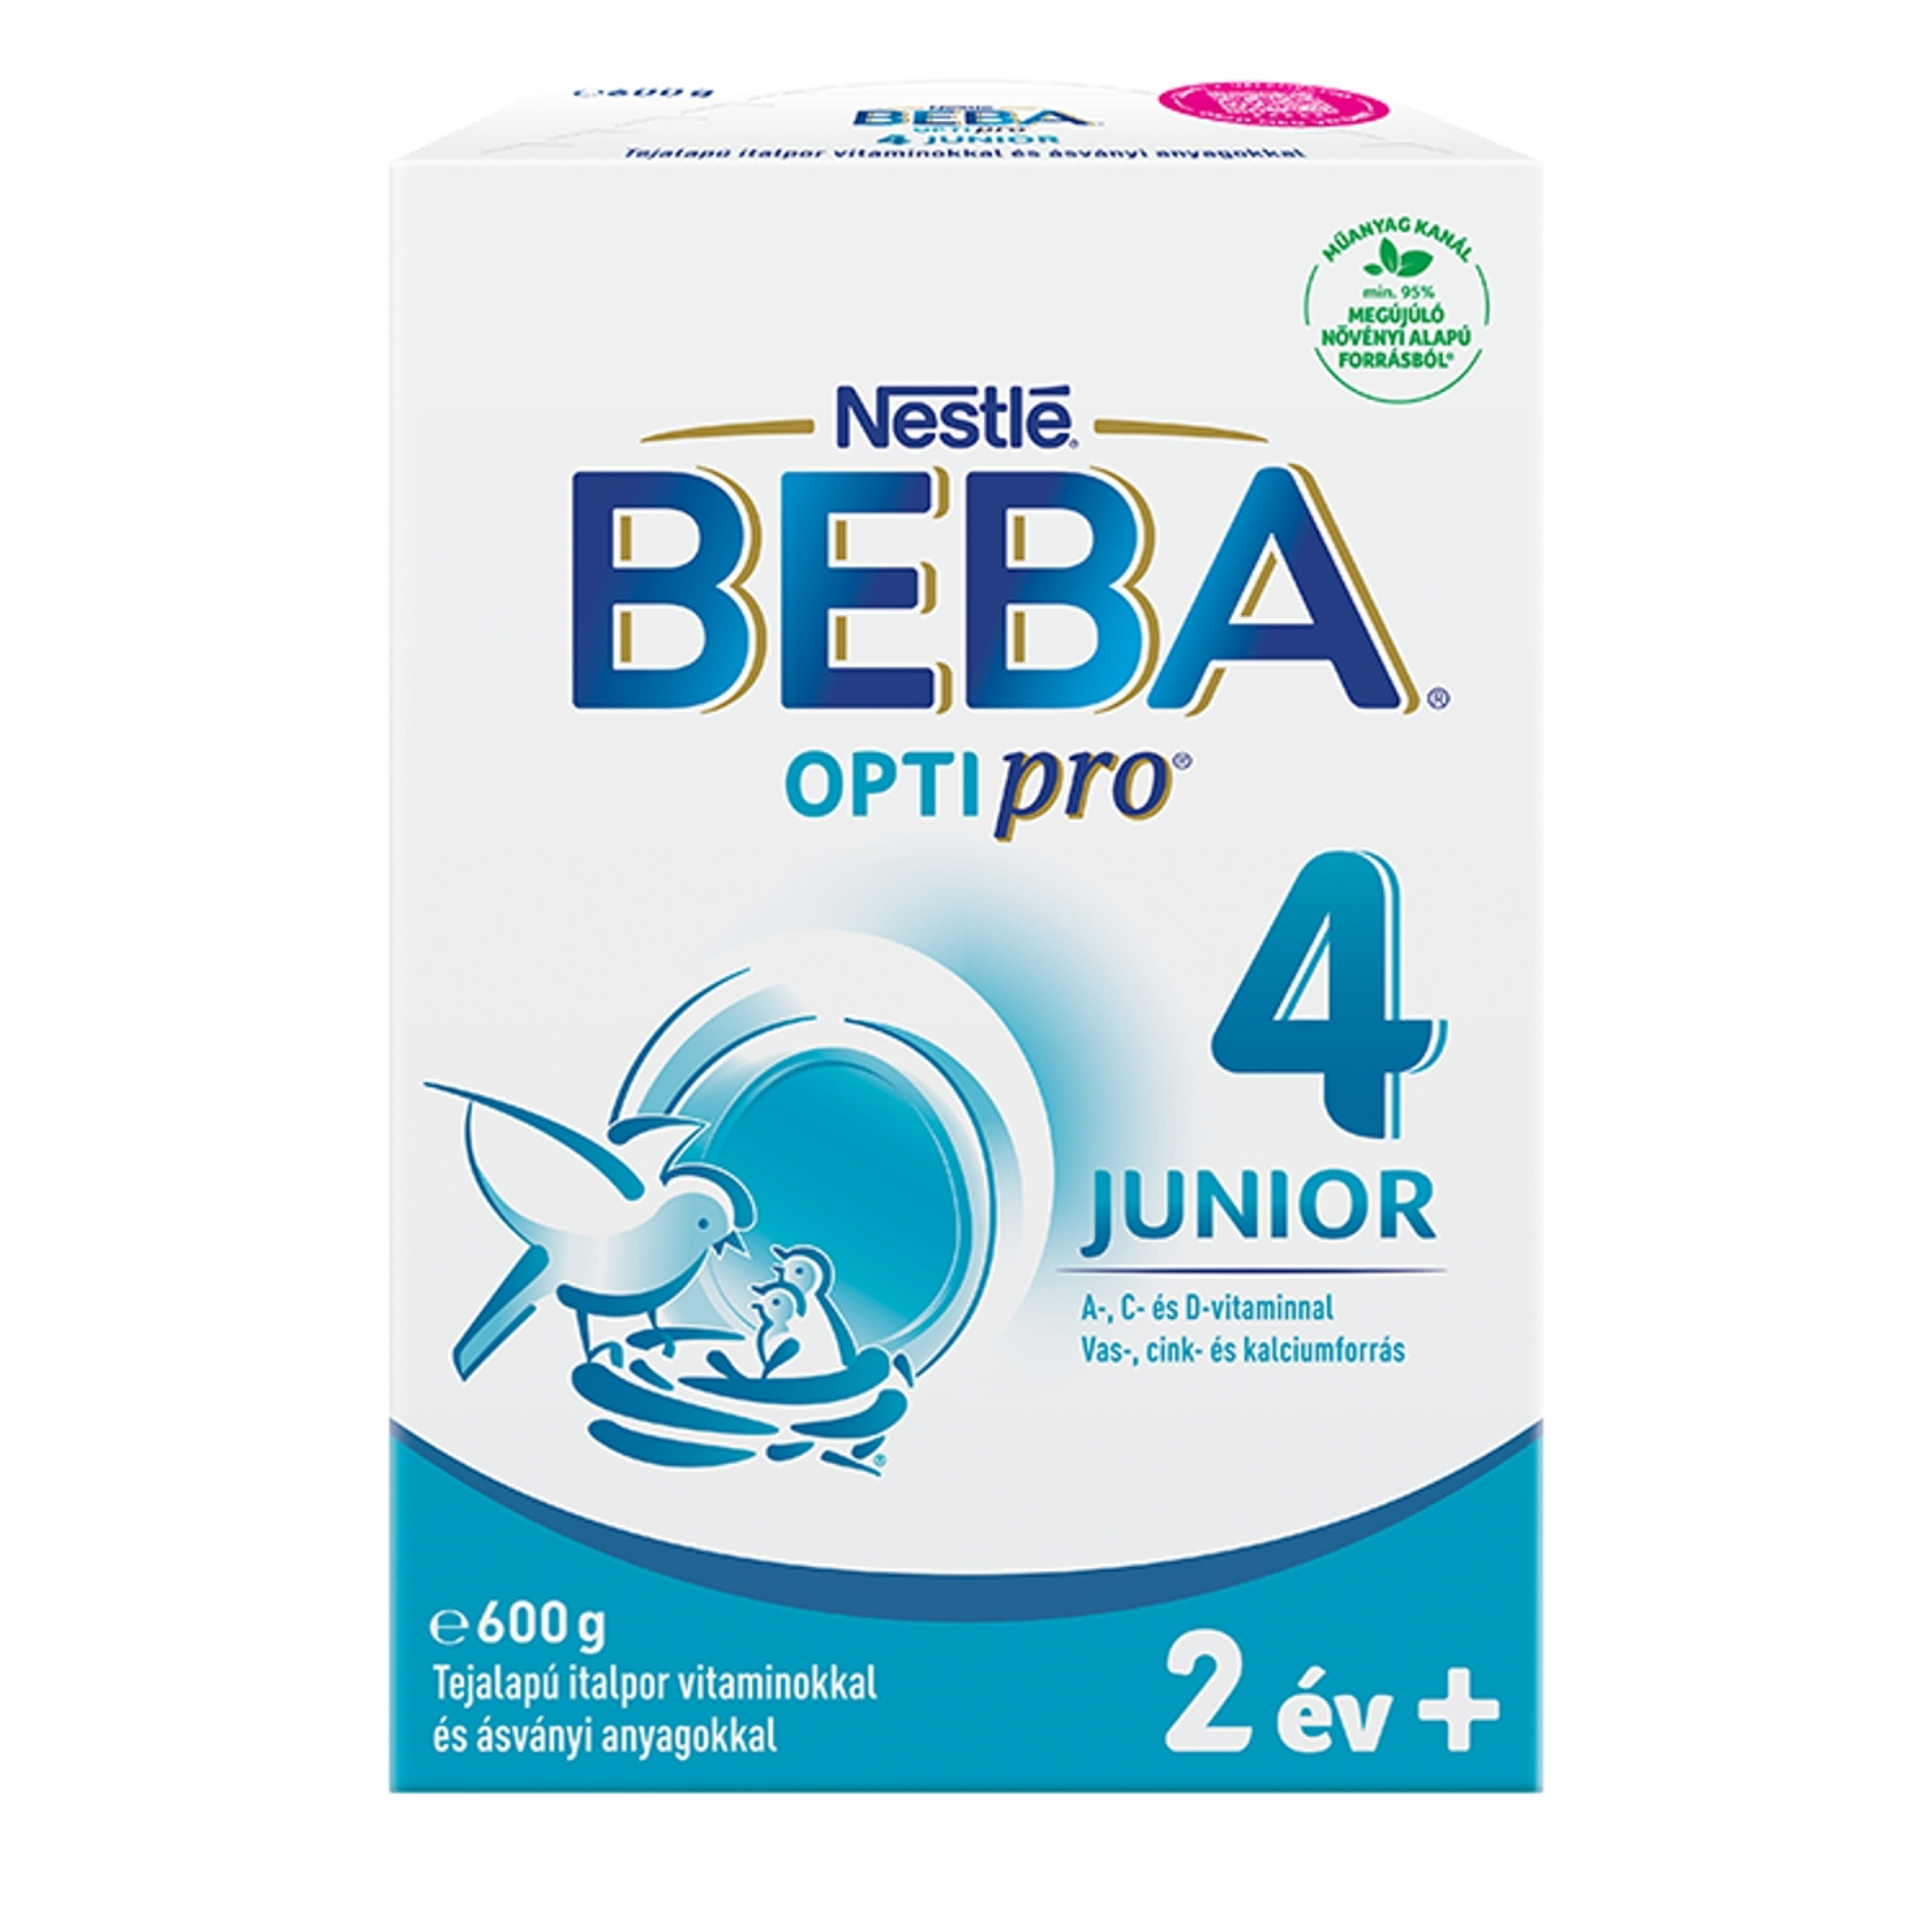 Beba Optipro 4 Junior tejalapú italpor vitaminokkal és ásványi anyagokkal 2 éves kortól - 600 g-1